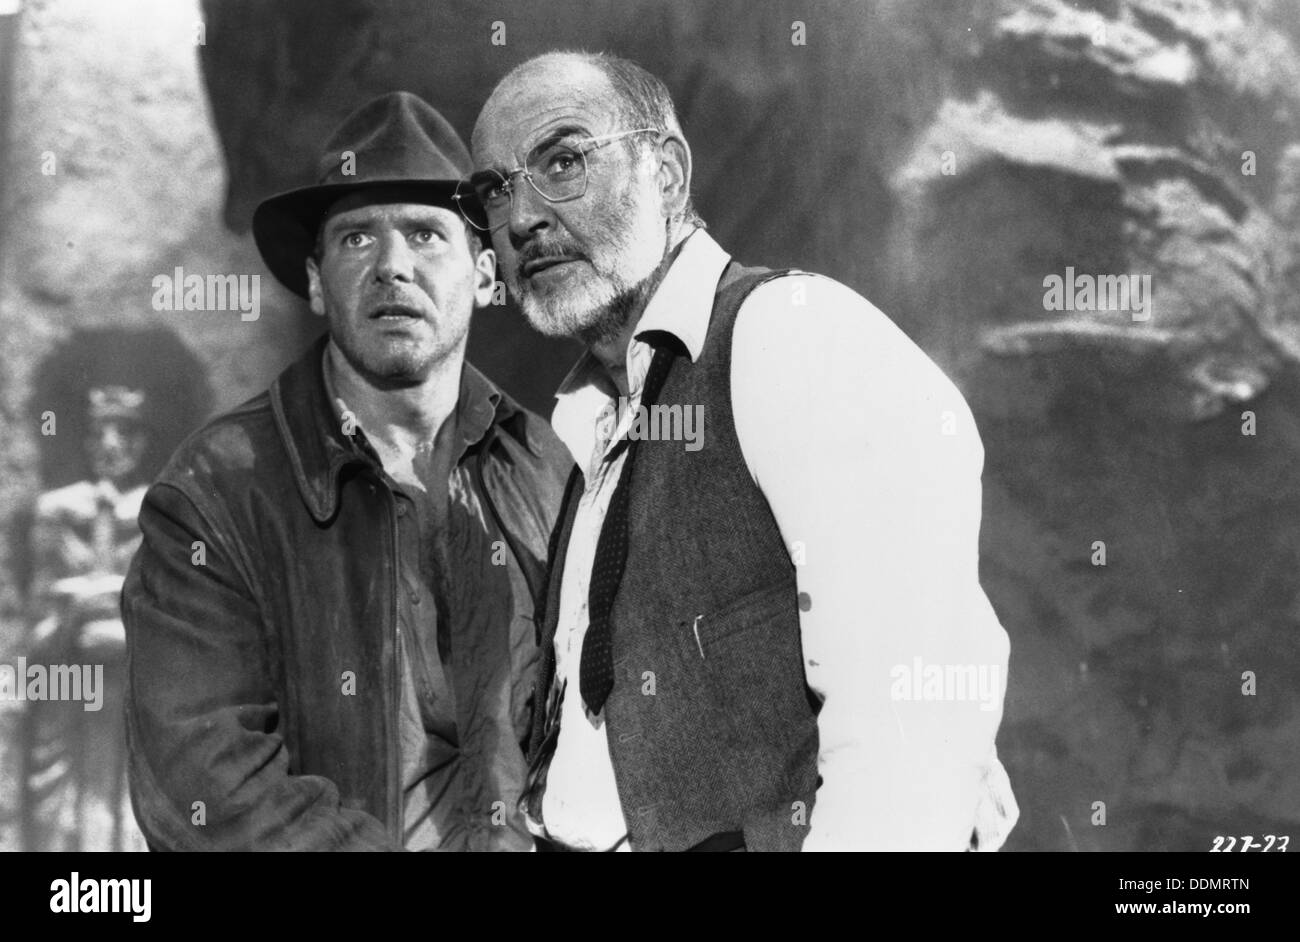 Sean Connery (1930- ) y Harrison Ford (1942- ), los actores de cine, 1989. Artista: Desconocido Foto de stock